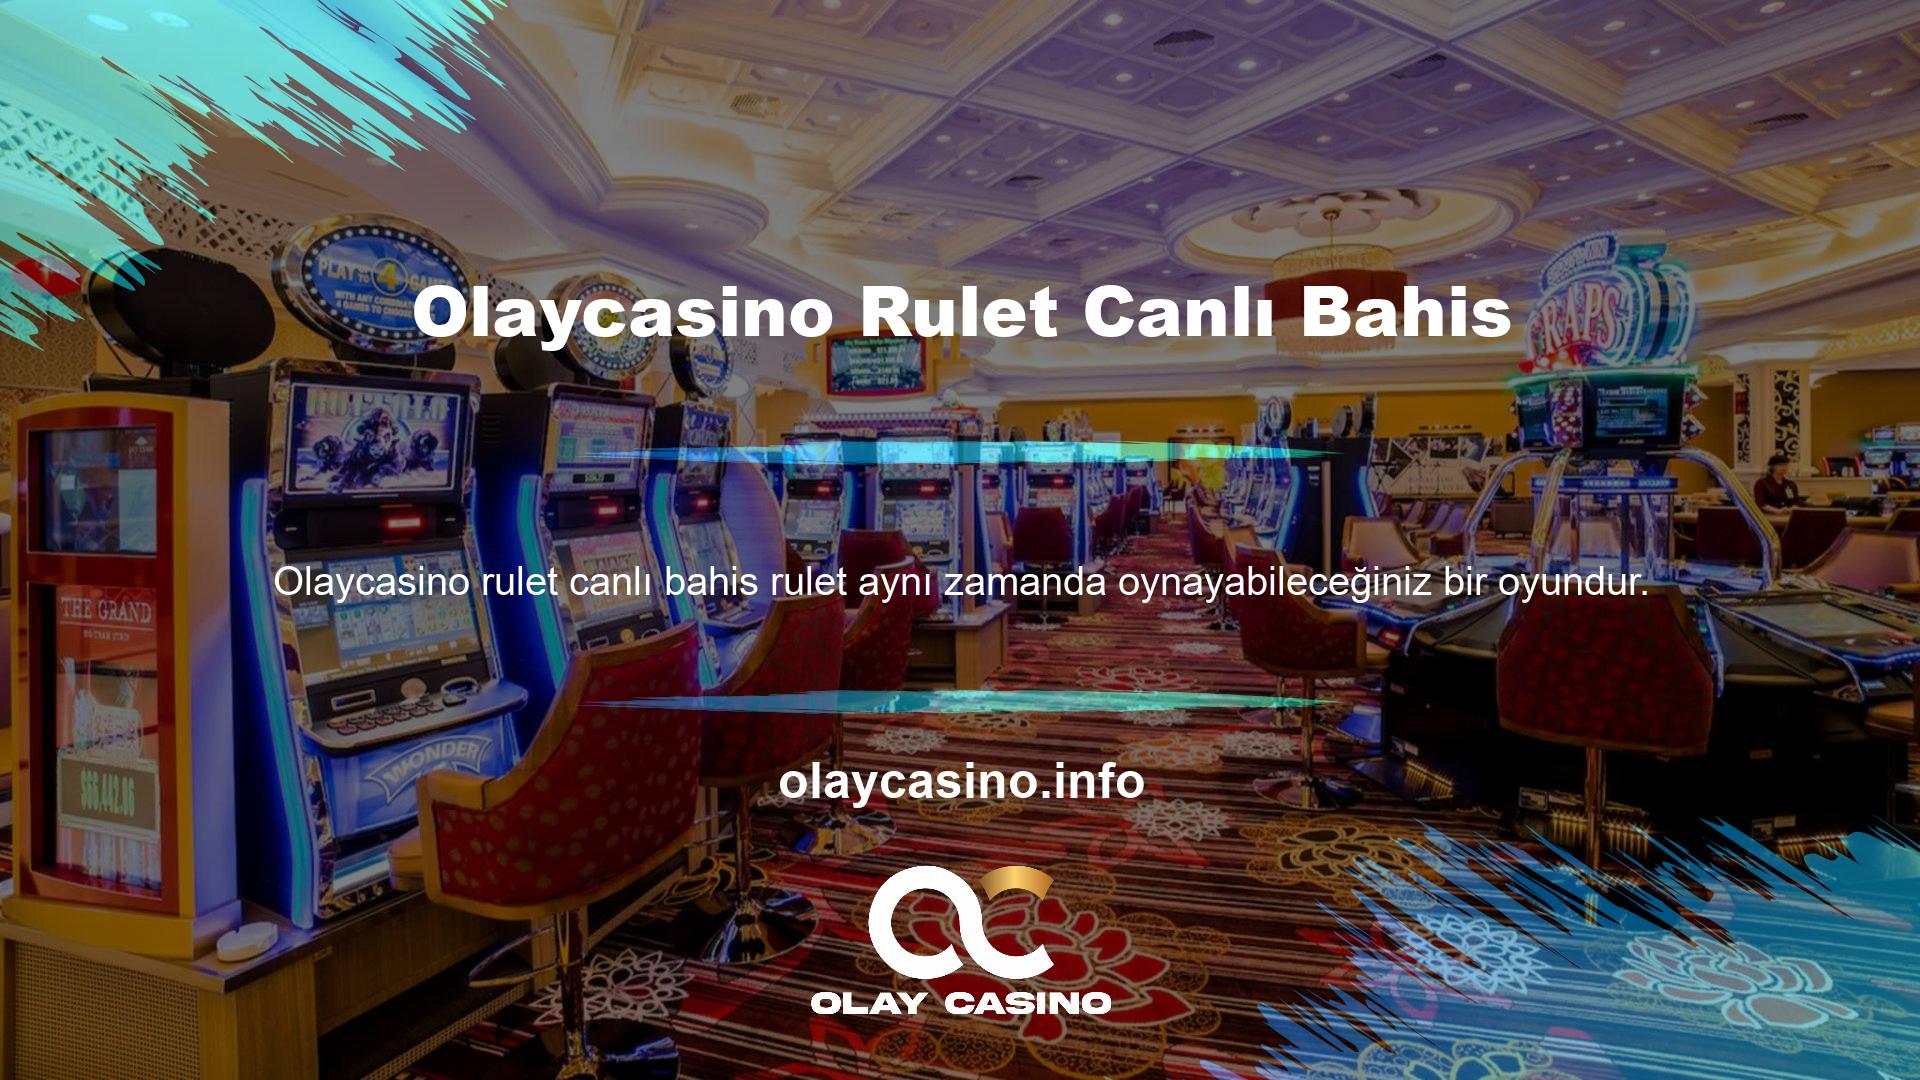 " Güvenilir çevrimiçi casino siteleri, oyuncularını canlı bir atmosfere davet ediyor